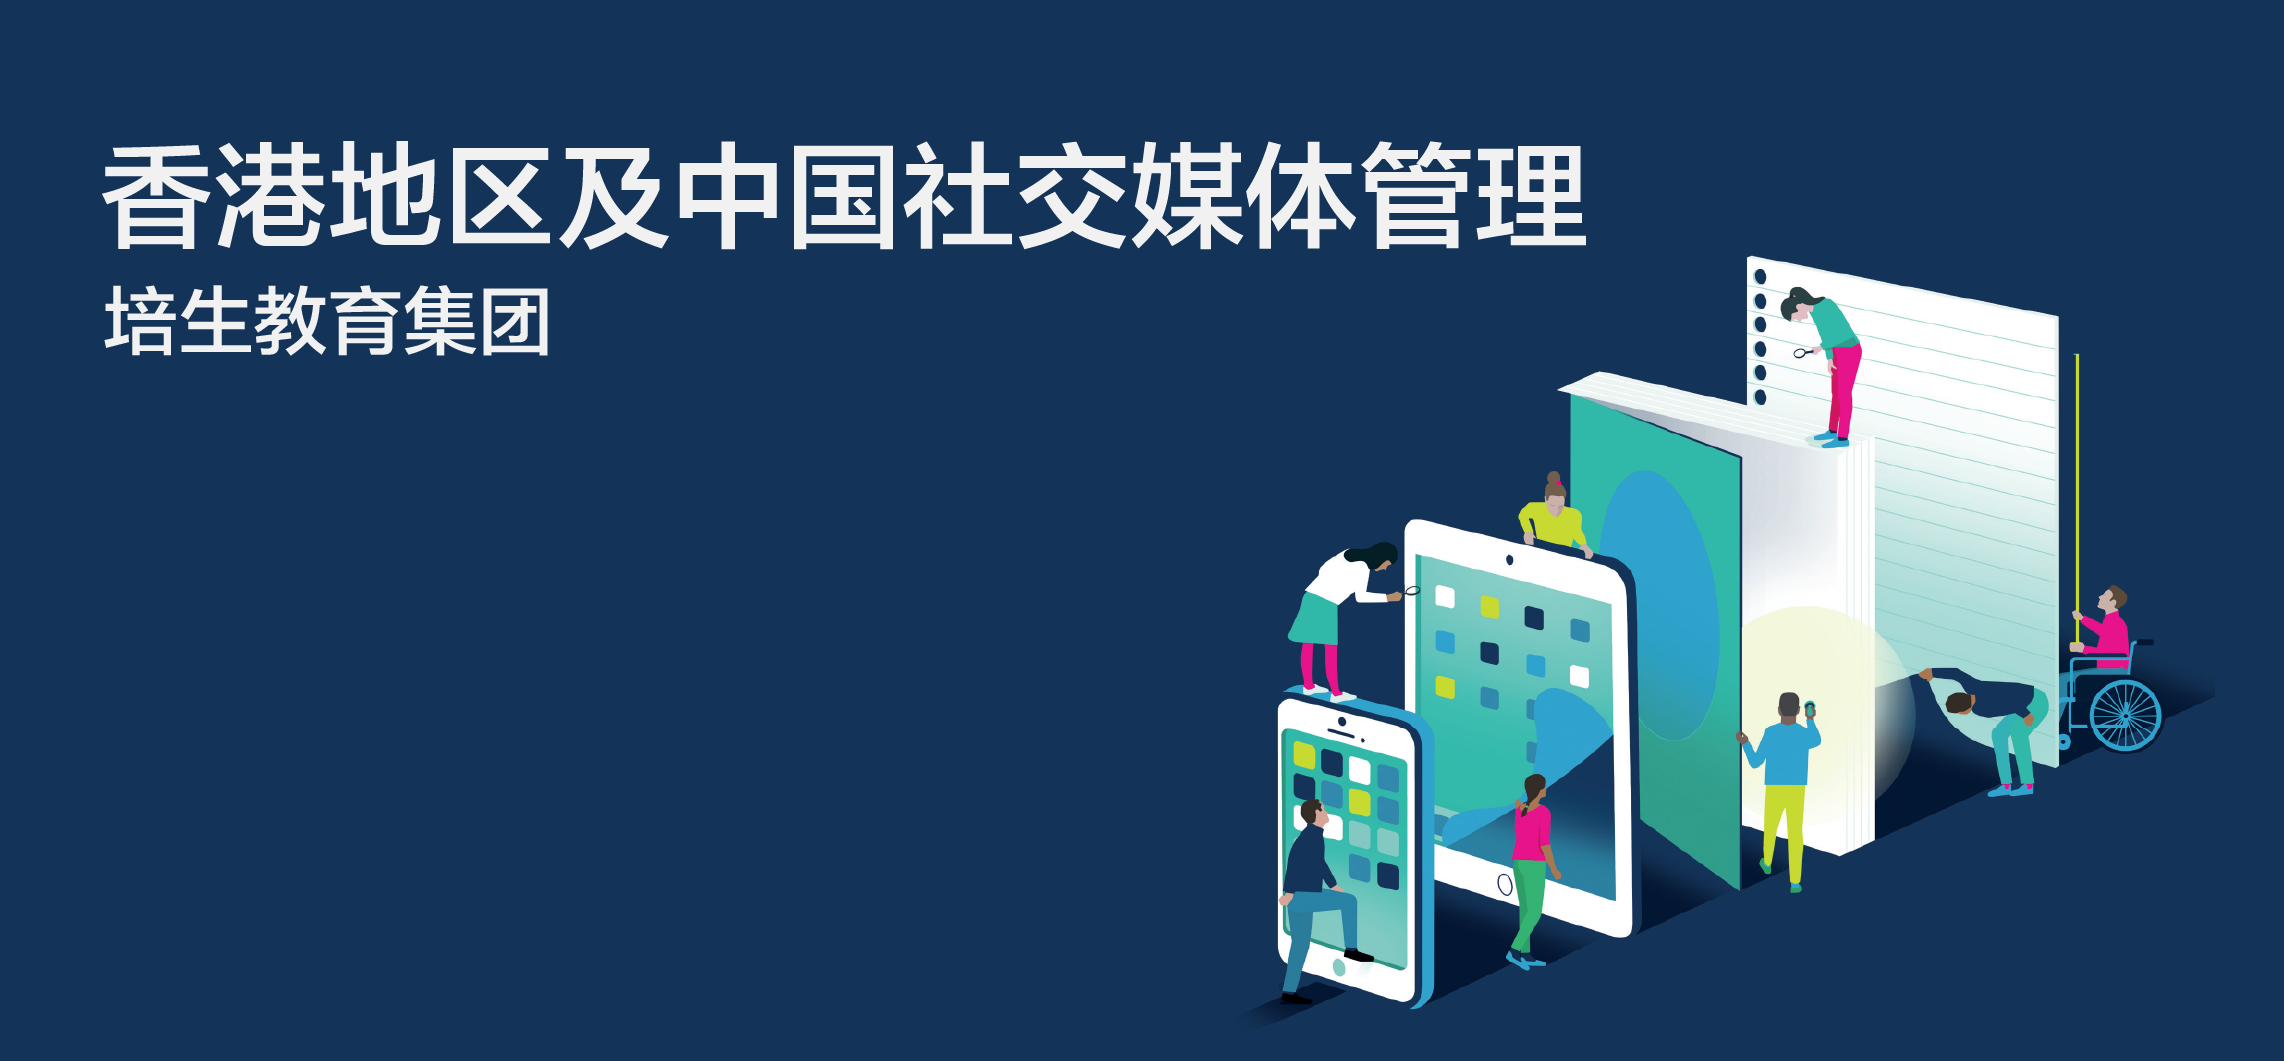 香港地区及中国社交媒体管理 - 教育 - 盈猎数码科技